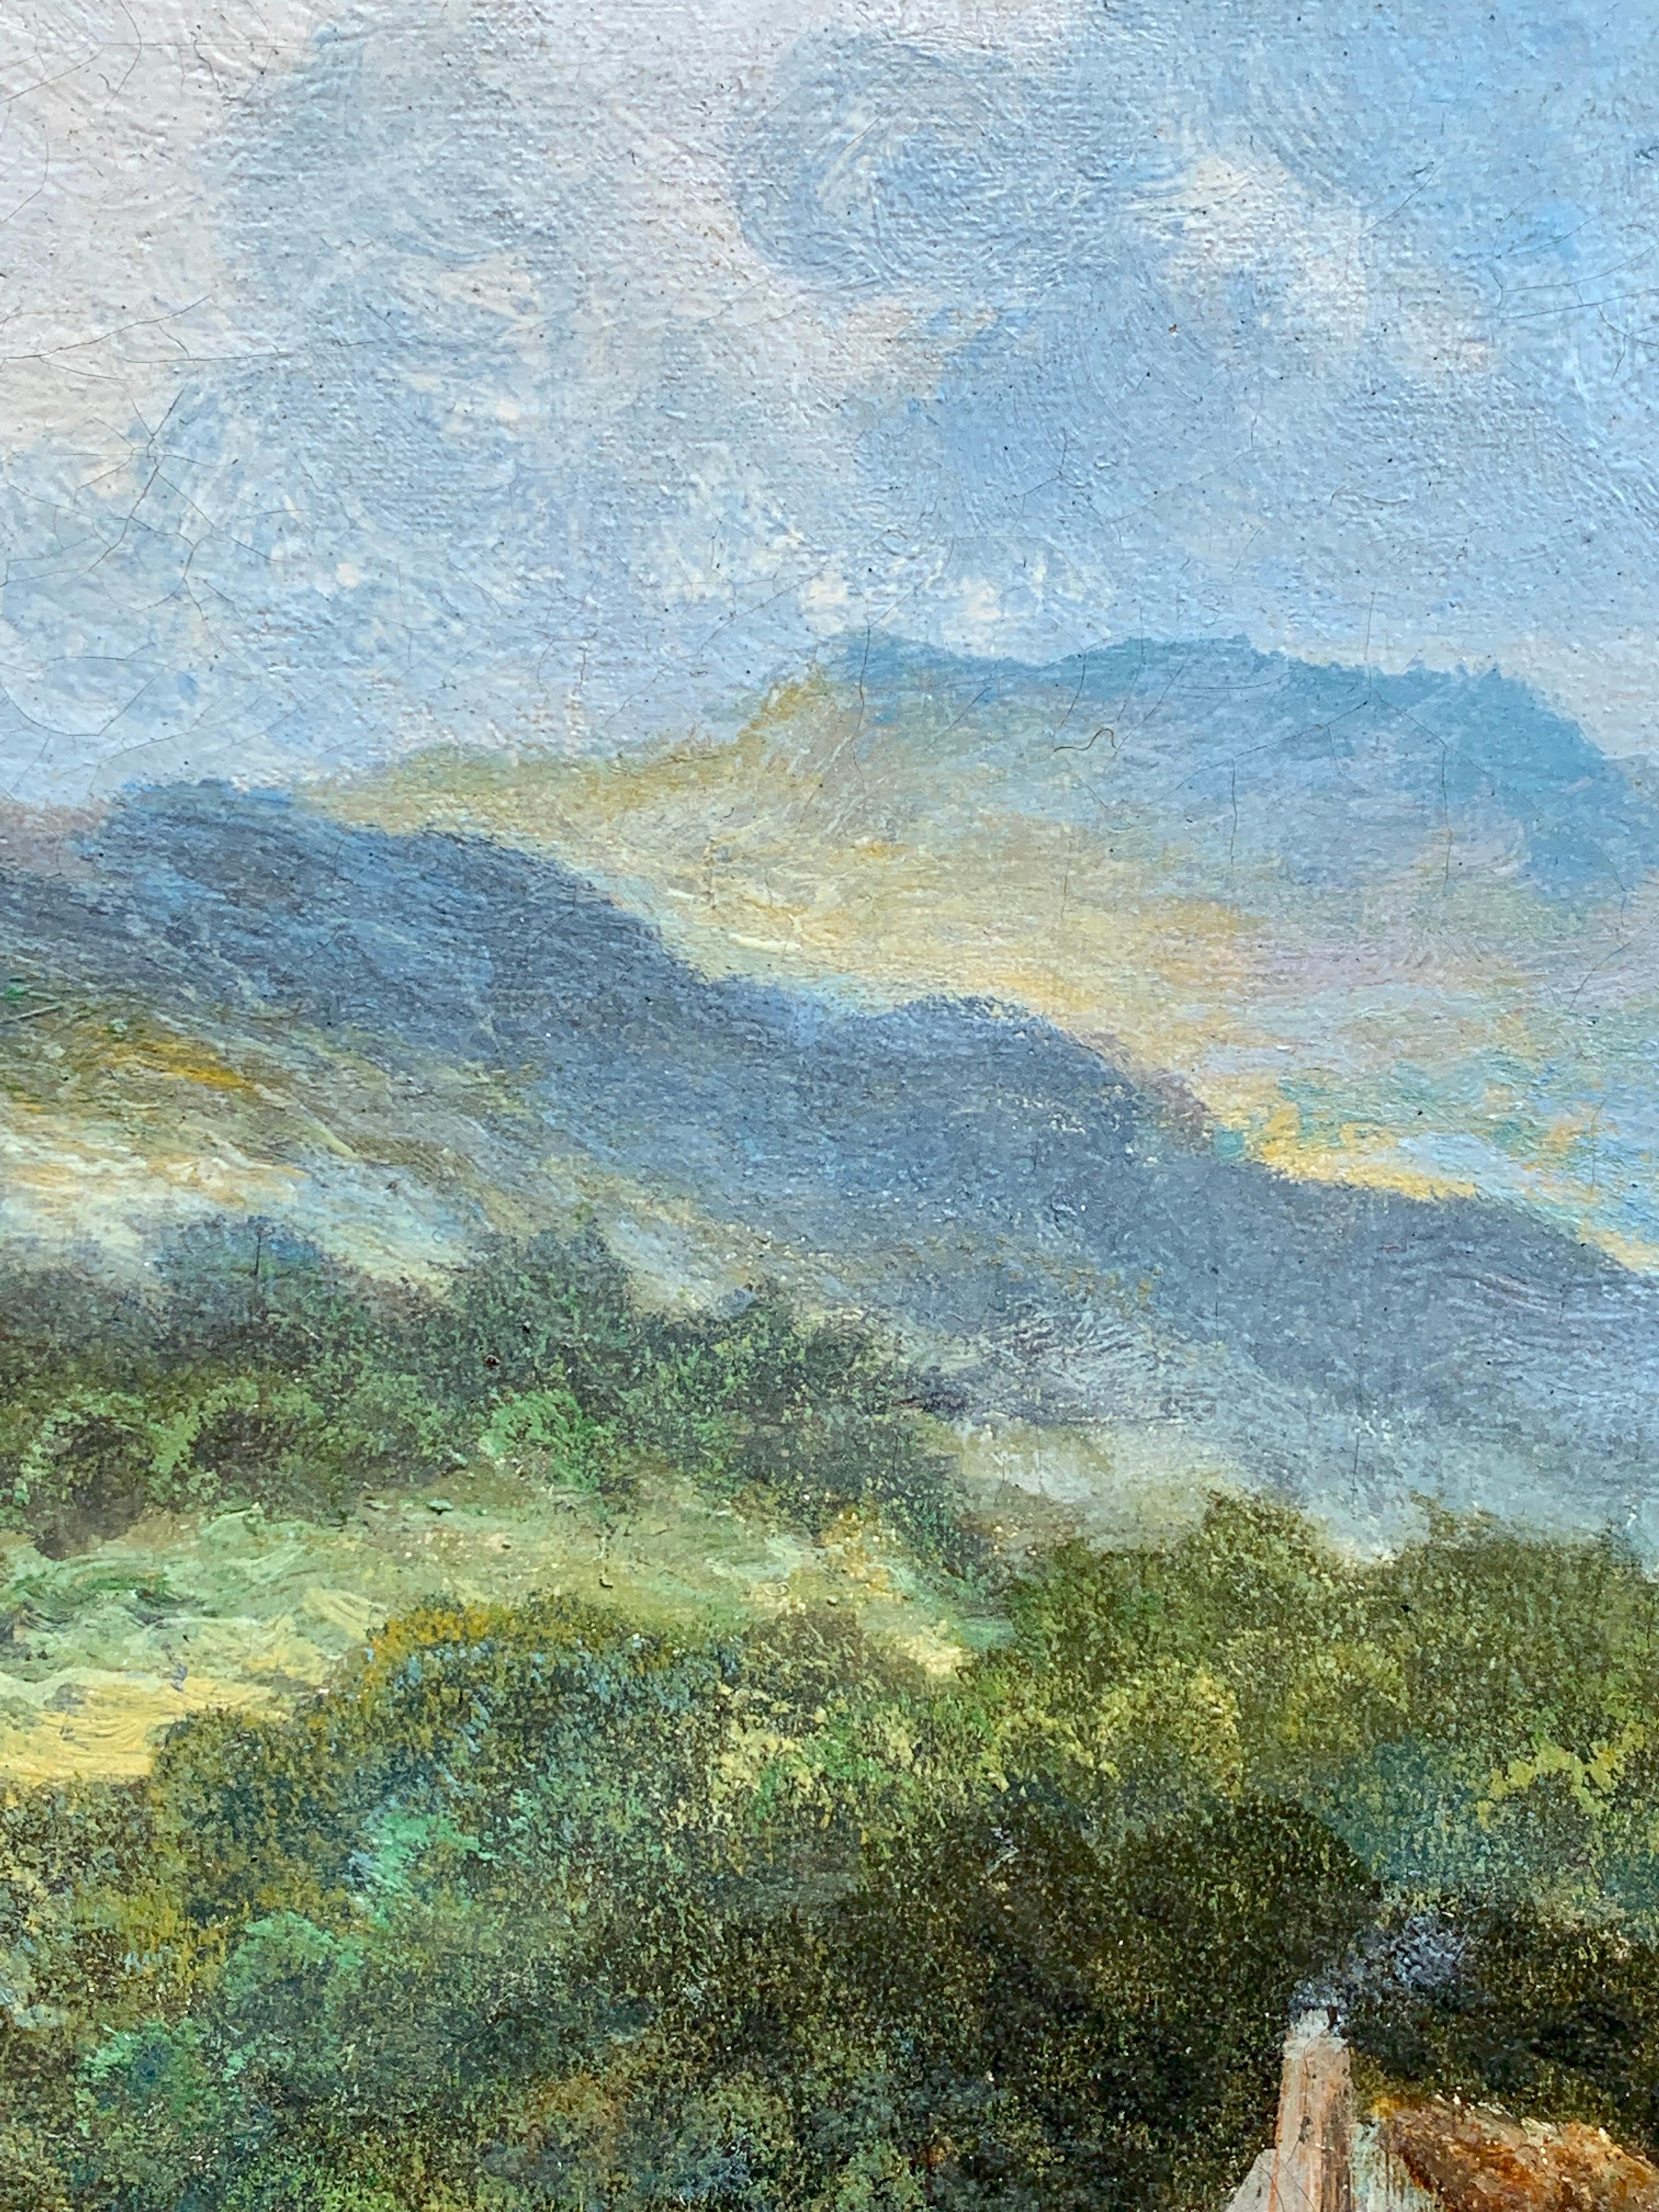 Paysage écossais de l'écluse des Highlands de la fin du XIXe siècle, avec abreuvement du bétail

E. Mulready était très certainement un pseudonyme de William Langley, un peintre anglais de paysages bien connu des années 1890 aux années 1920.

Cette